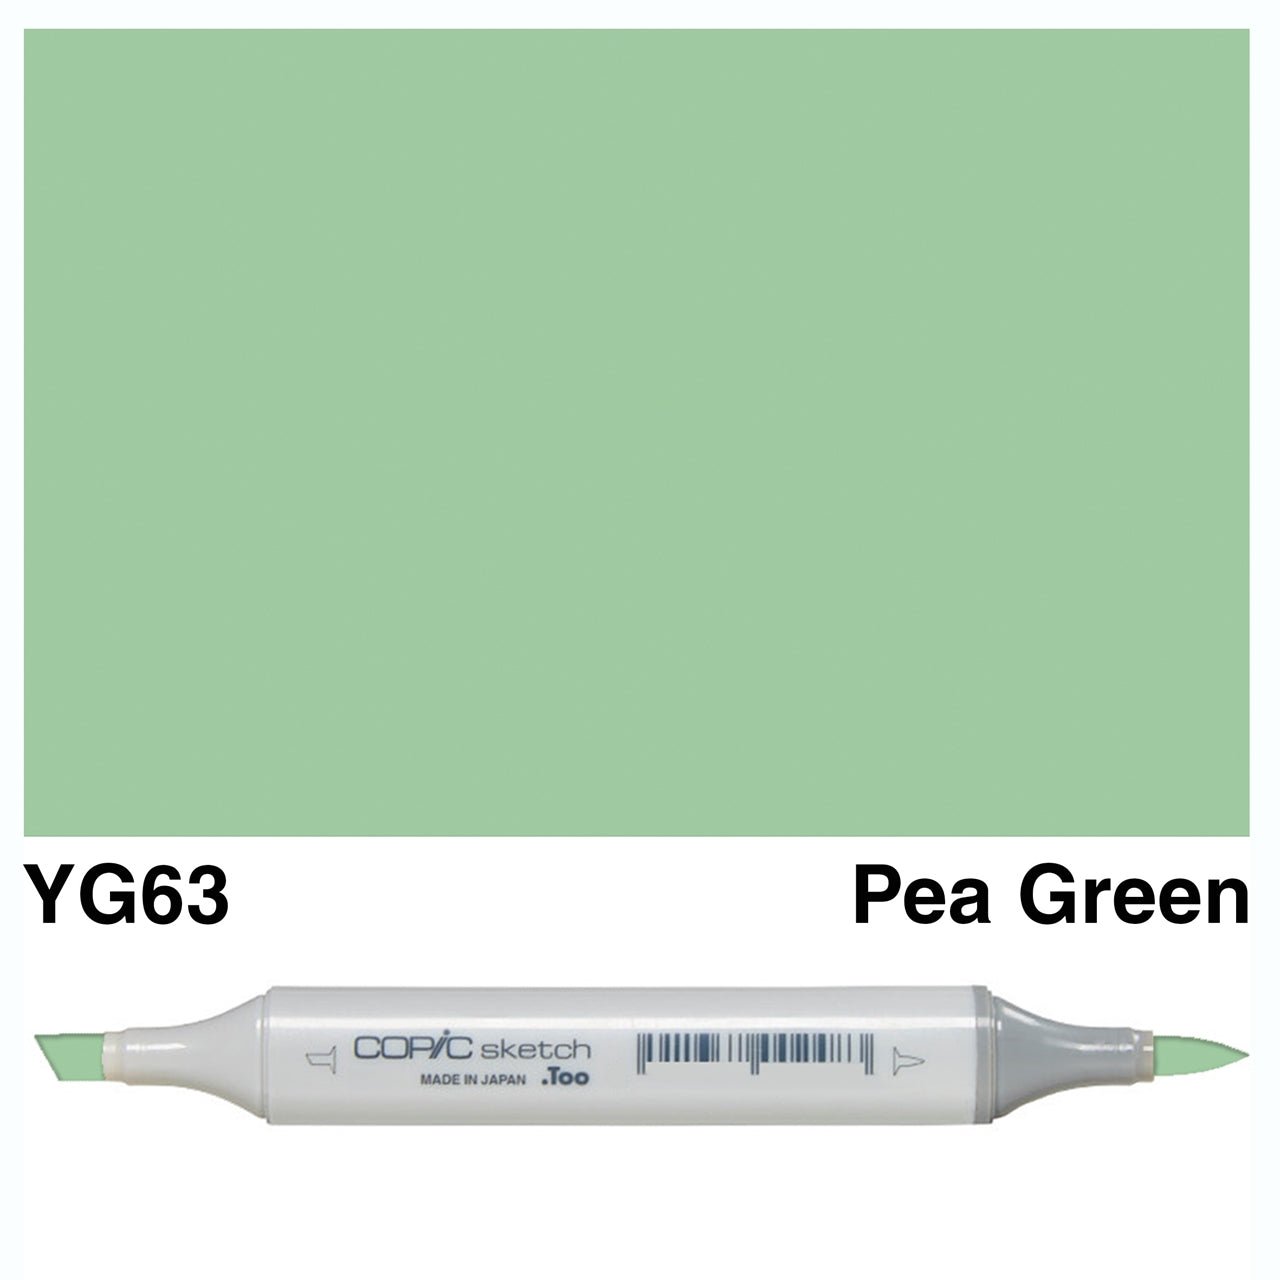 Copic Sketch YG63 Pea Green - theartshop.com.au